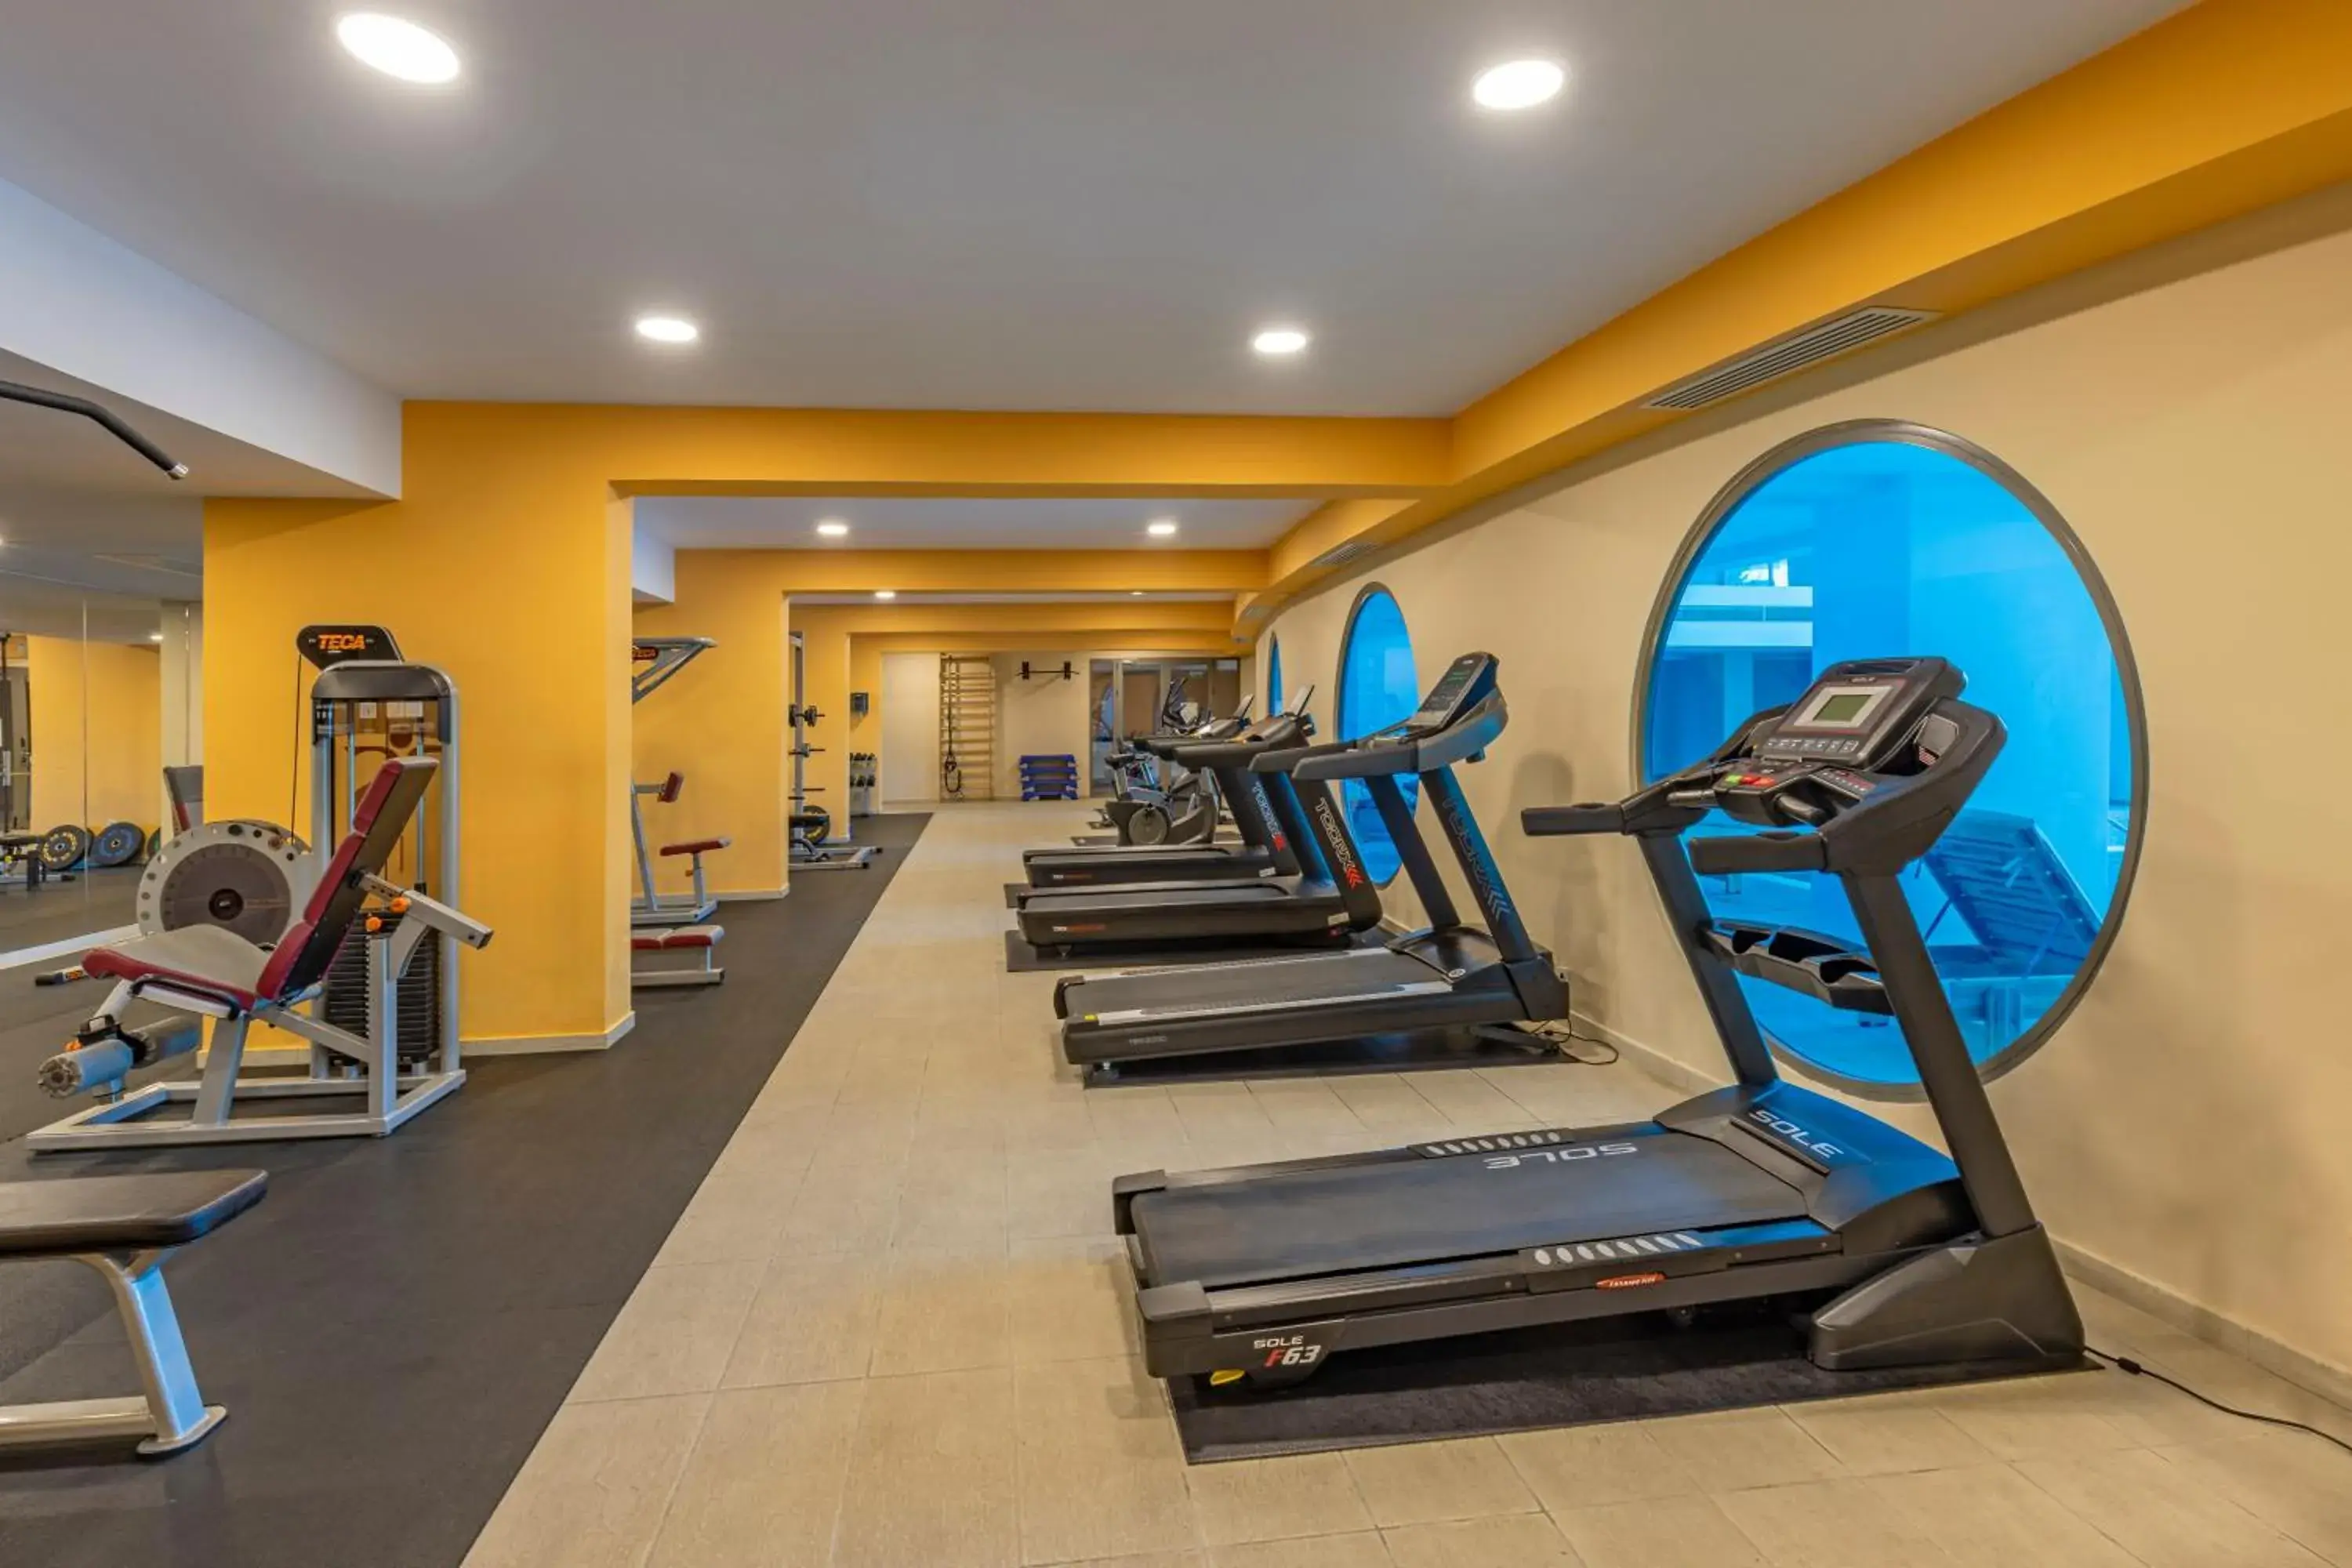 Fitness centre/facilities, Fitness Center/Facilities in KRESTEN ROYAL Euphoria Resort